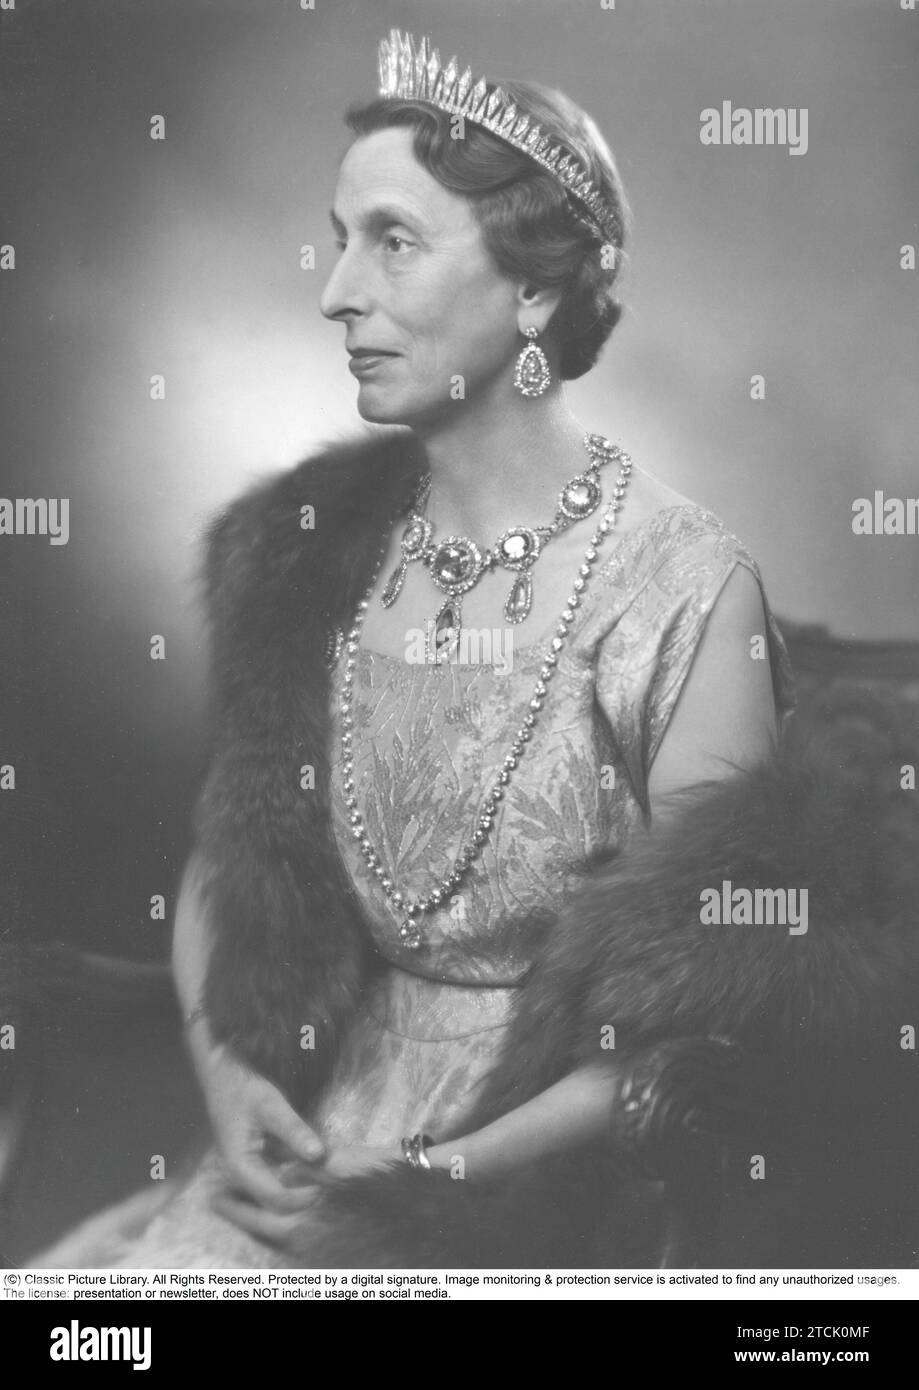 Louise Mountbatten. Geboren am 13. juli 1889 bis 7. märz 1965, Königin von Schweden von 1950 bis zu ihrem Tod 1965 als Ehefrau von König Gustaf VI. Adolf. 1945 Stockfoto